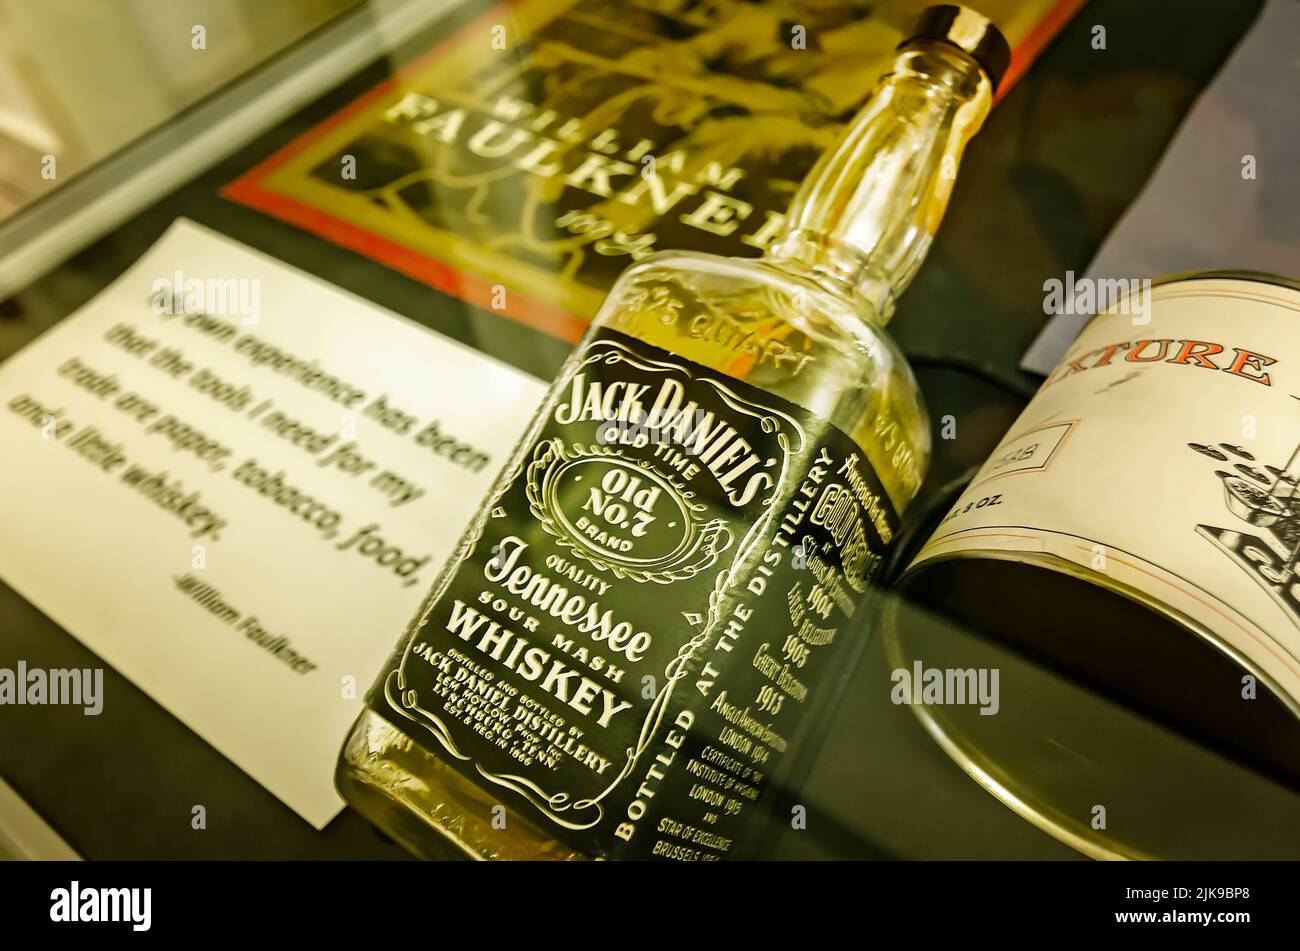 Una botella de whisky antiguo nº 7 de Jack Daniel y una lata de tabaco se muestran en Rowan Oak, el 30 de mayo de 2015, en Oxford, Mississippi. Foto de stock